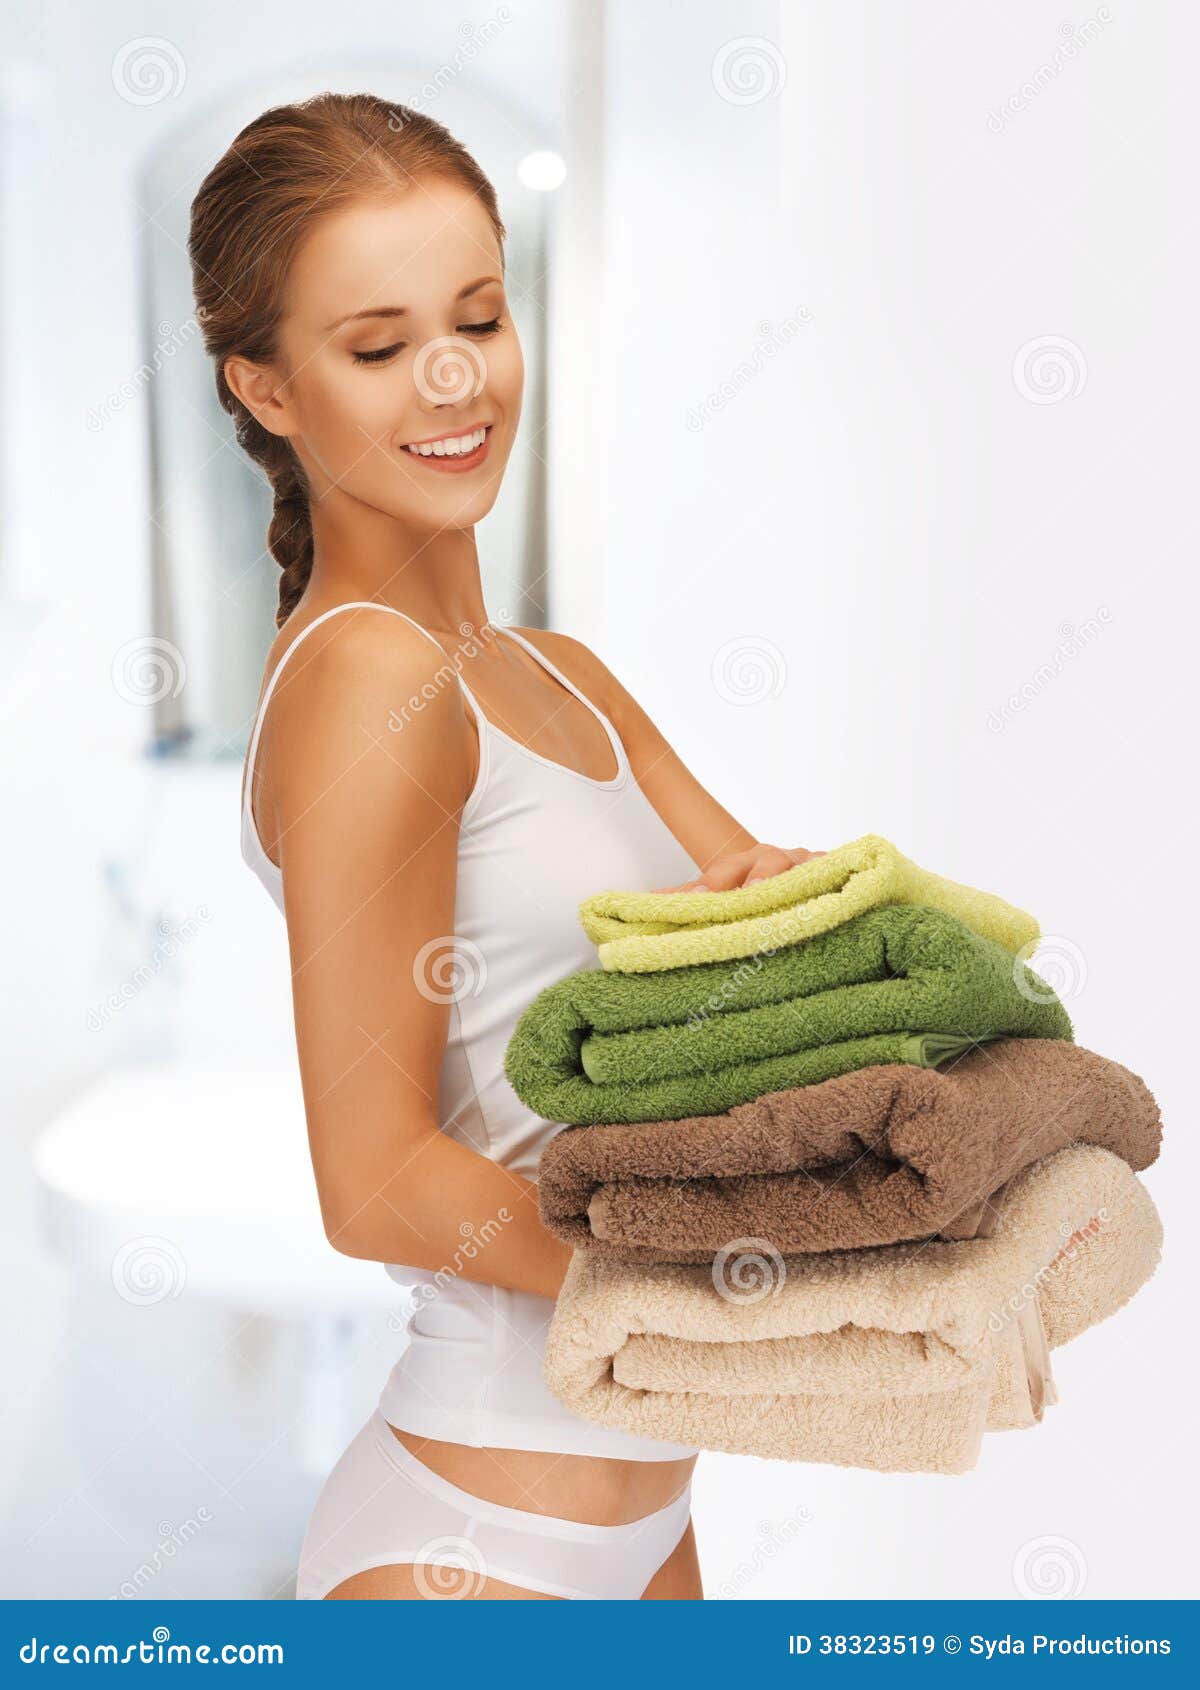 Попросила принести полотенце. Девушка в полотенце. Девушка с полотенцем в руках. Девушка держит в руках полотенце. Женщина со стопкой полотенец.